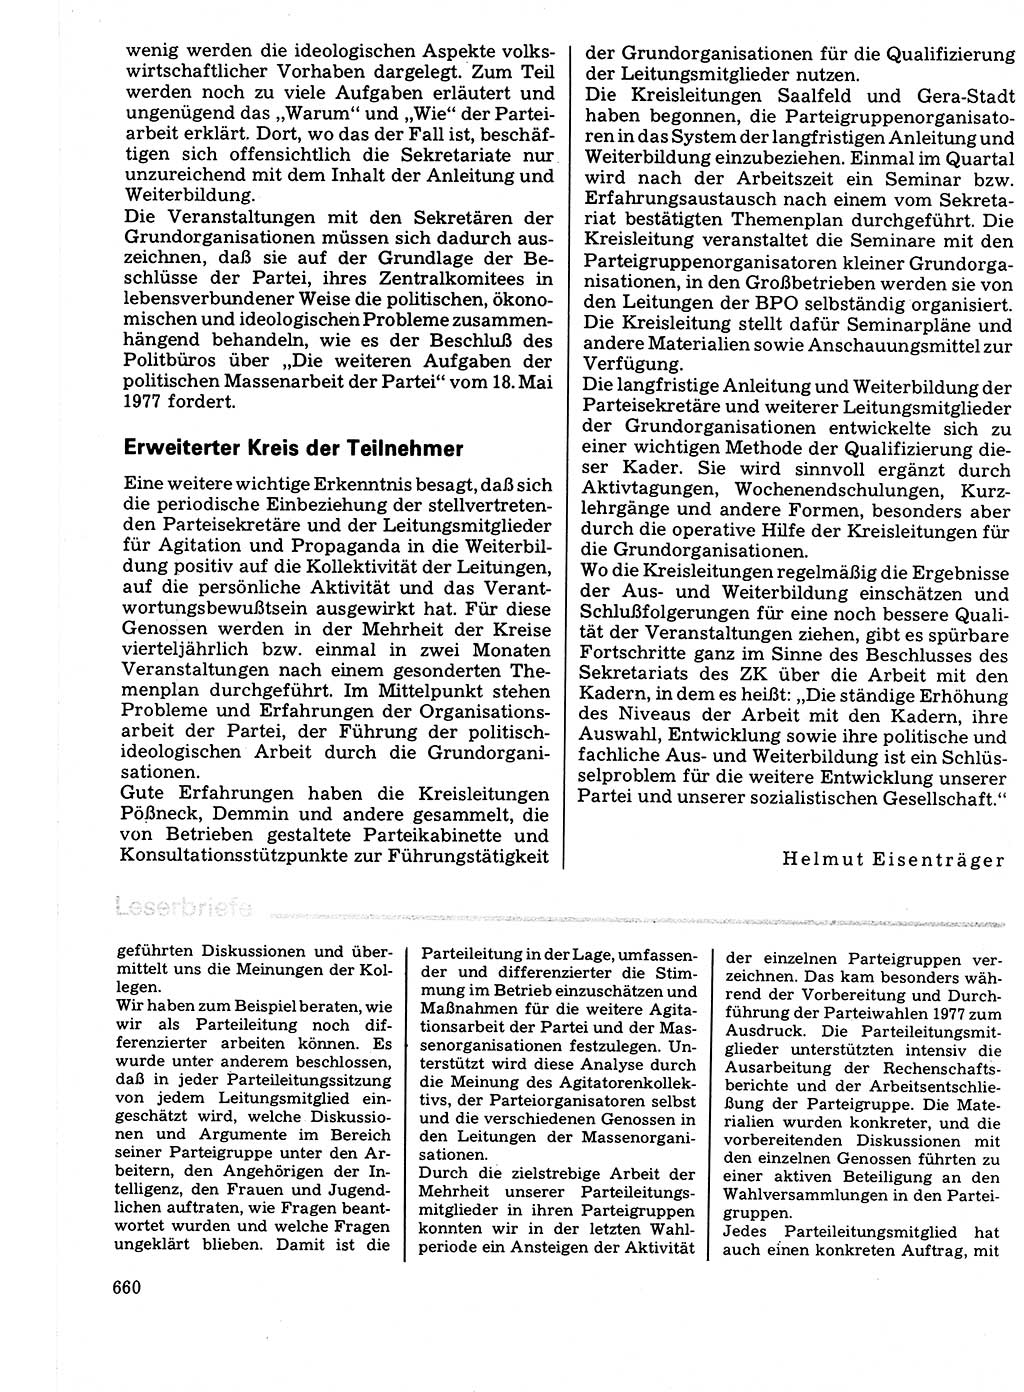 Neuer Weg (NW), Organ des Zentralkomitees (ZK) der SED (Sozialistische Einheitspartei Deutschlands) für Fragen des Parteilebens, 32. Jahrgang [Deutsche Demokratische Republik (DDR)] 1977, Seite 660 (NW ZK SED DDR 1977, S. 660)